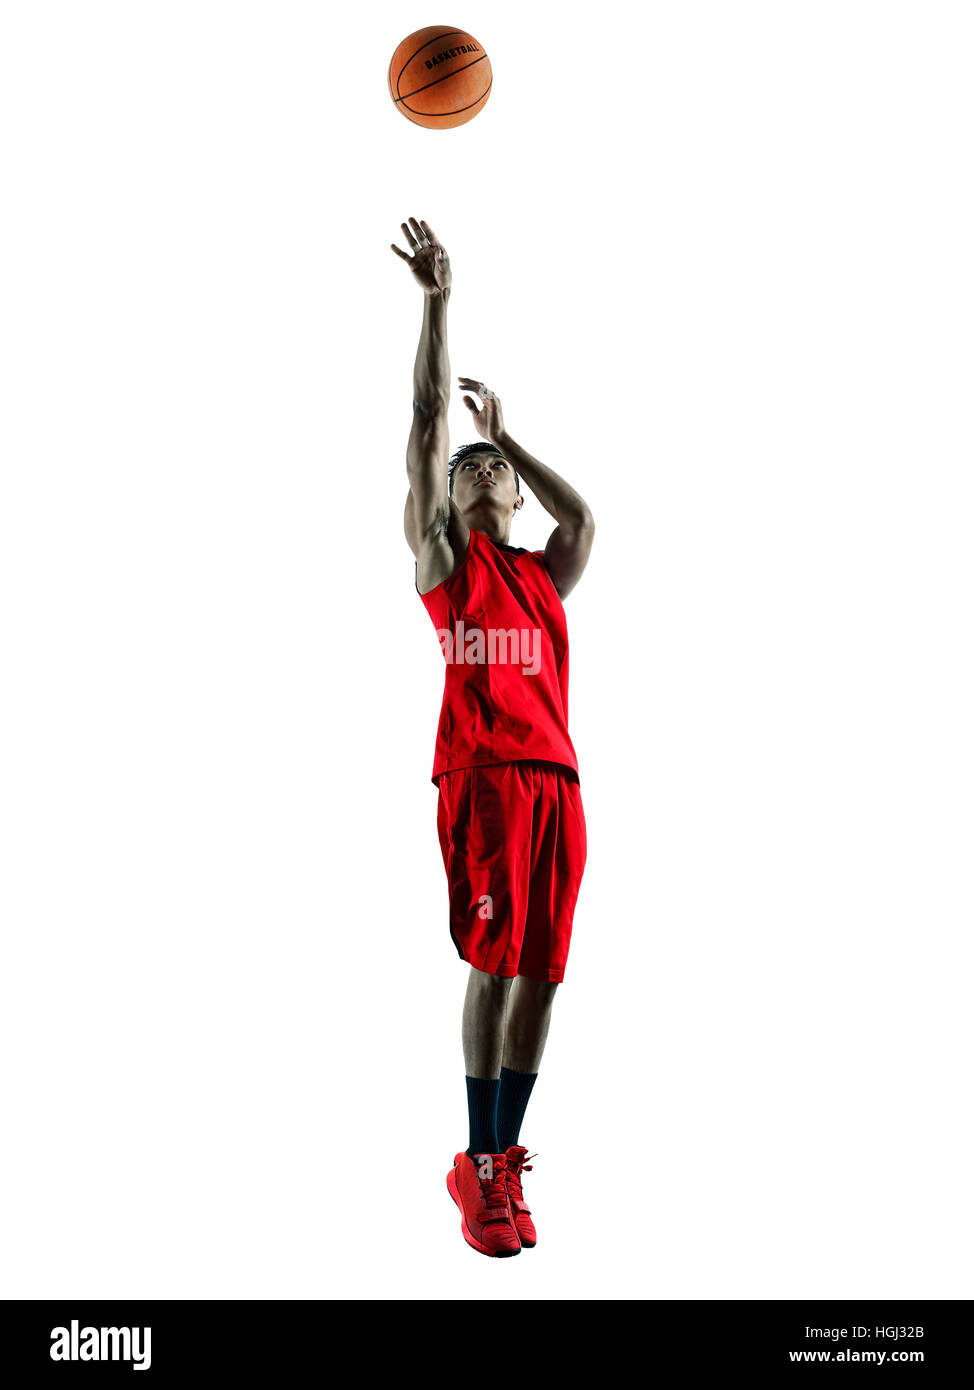 Un joueur de basket-ball homme asiatique en silhouette isolé sur fond blanc Banque D'Images